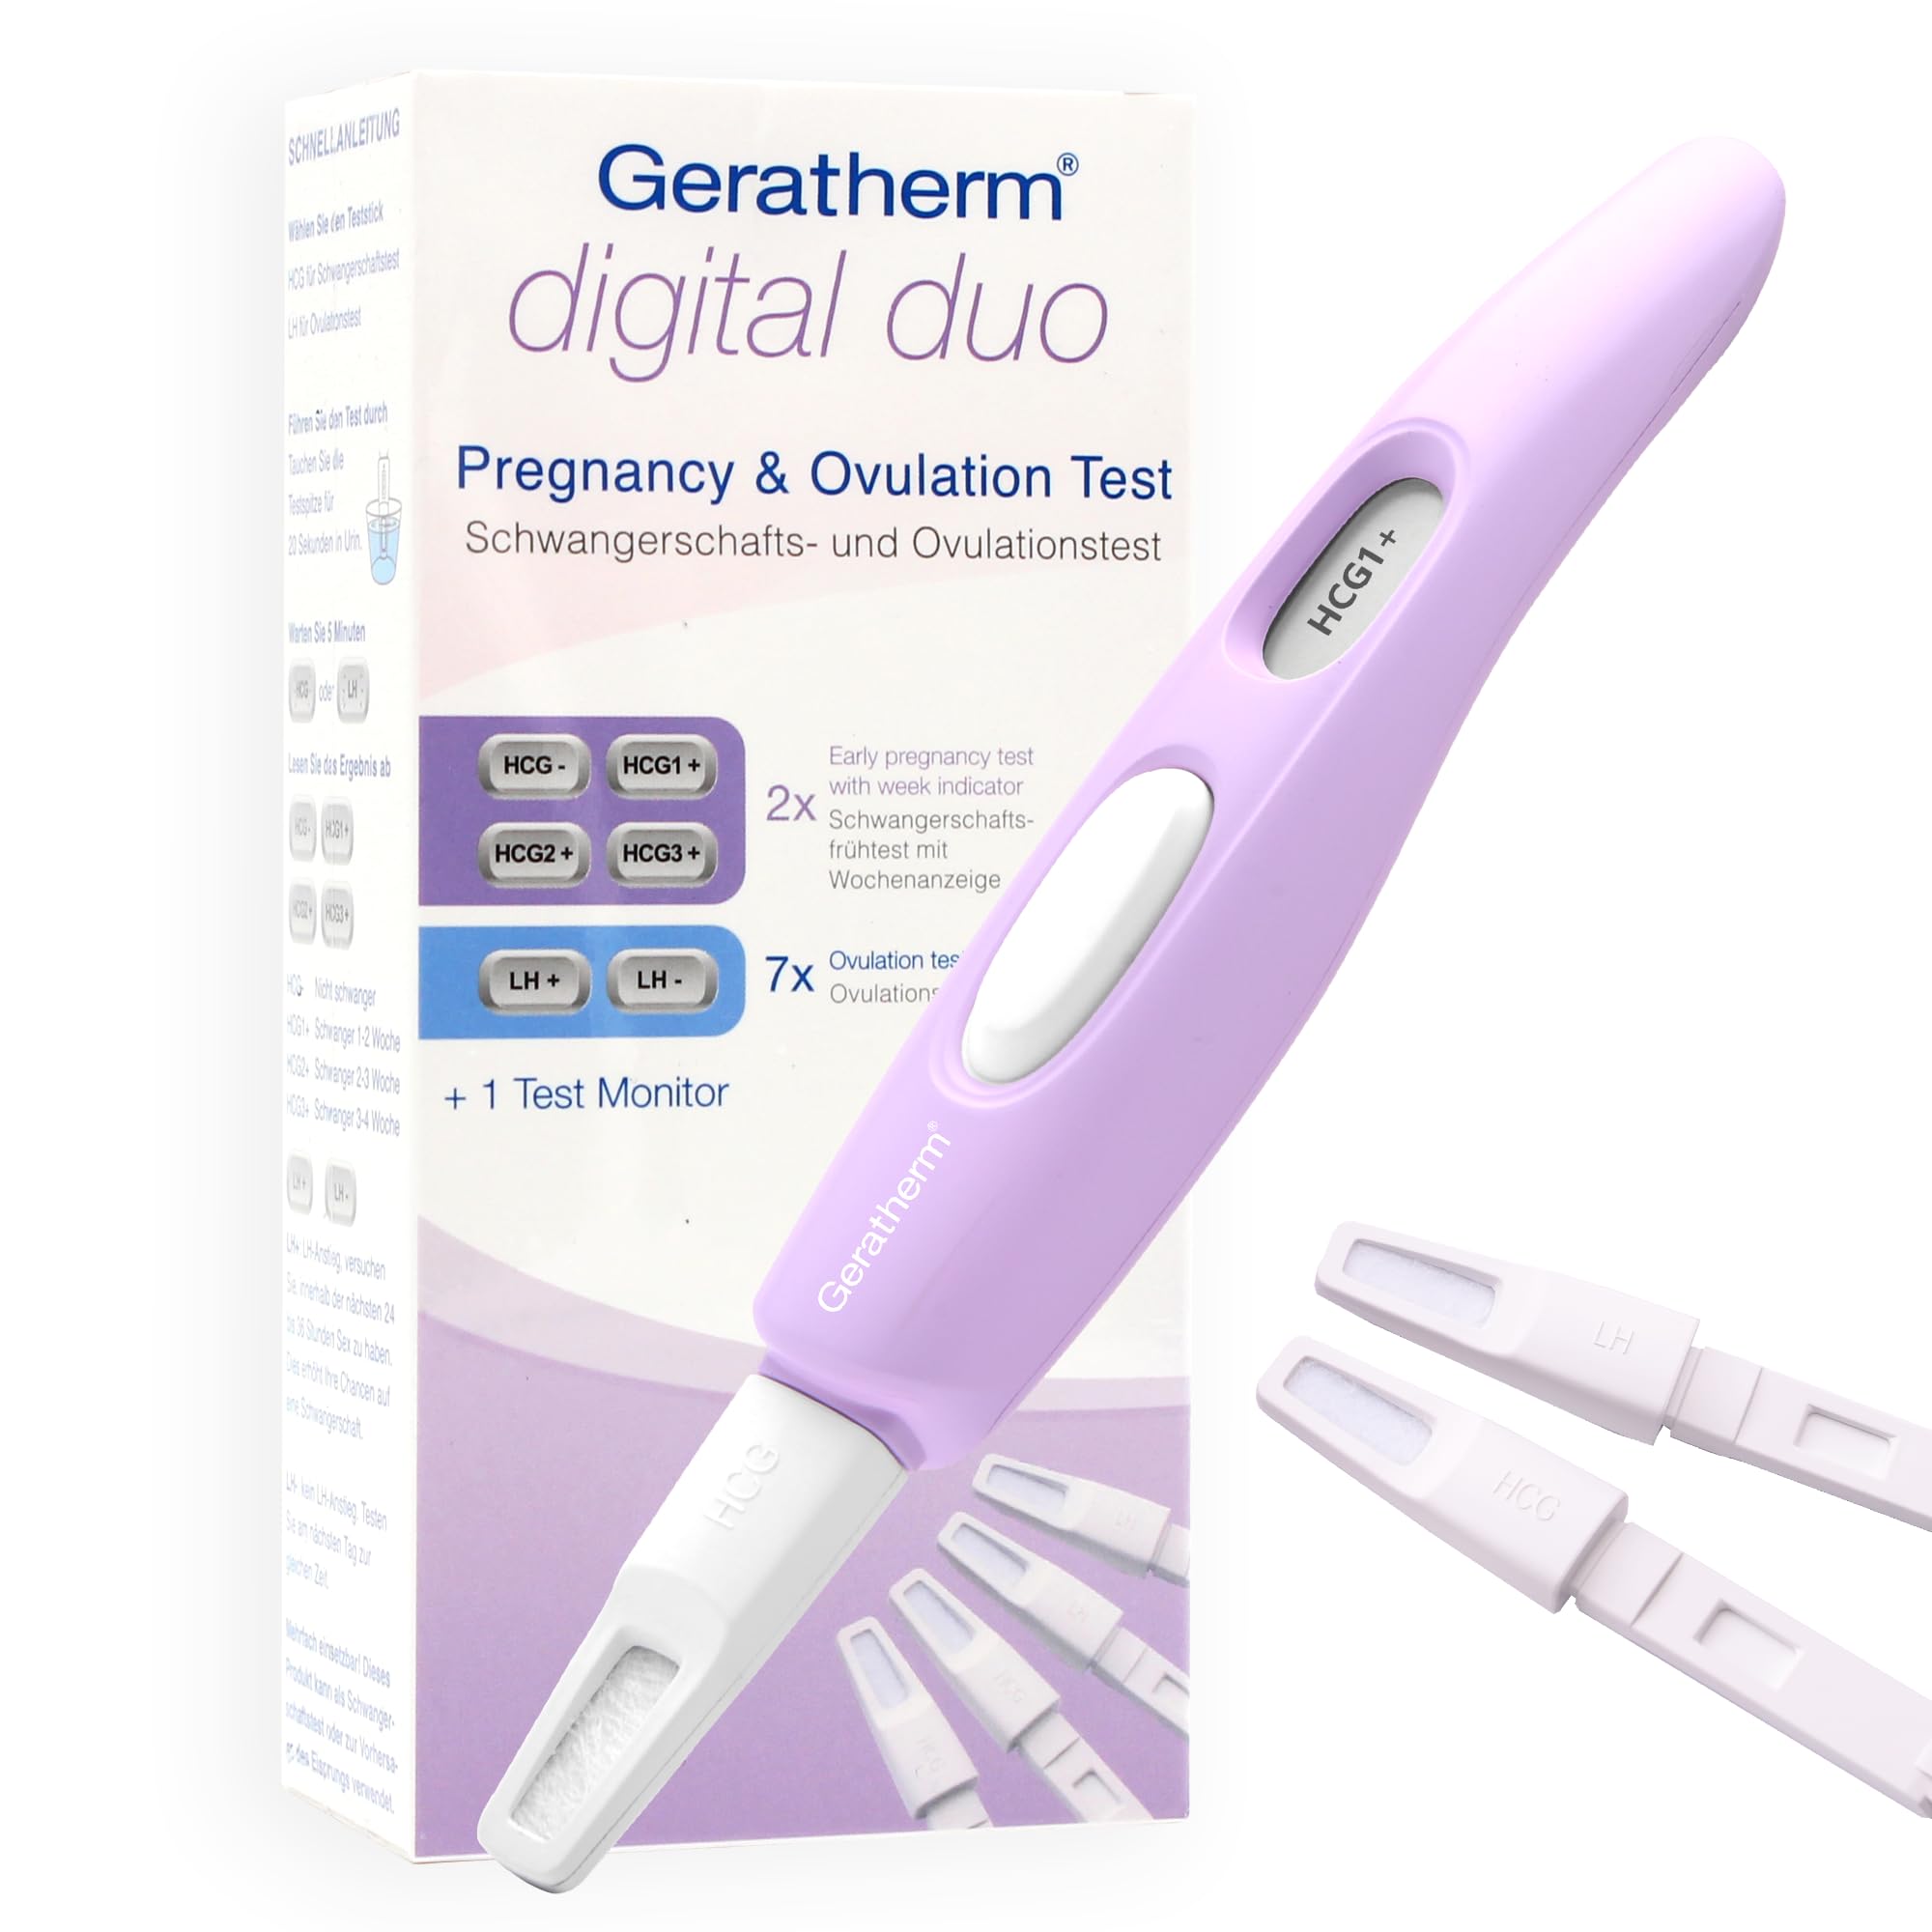 Geratherm digital duo – digitaler Schwangerschafts- & Ovulationstest/Kombi-Test/2-in-1/Kinderwunsch-Set 7x Eisprung 2x Schwangerschaft/Sensitivität 25 mIU/ml